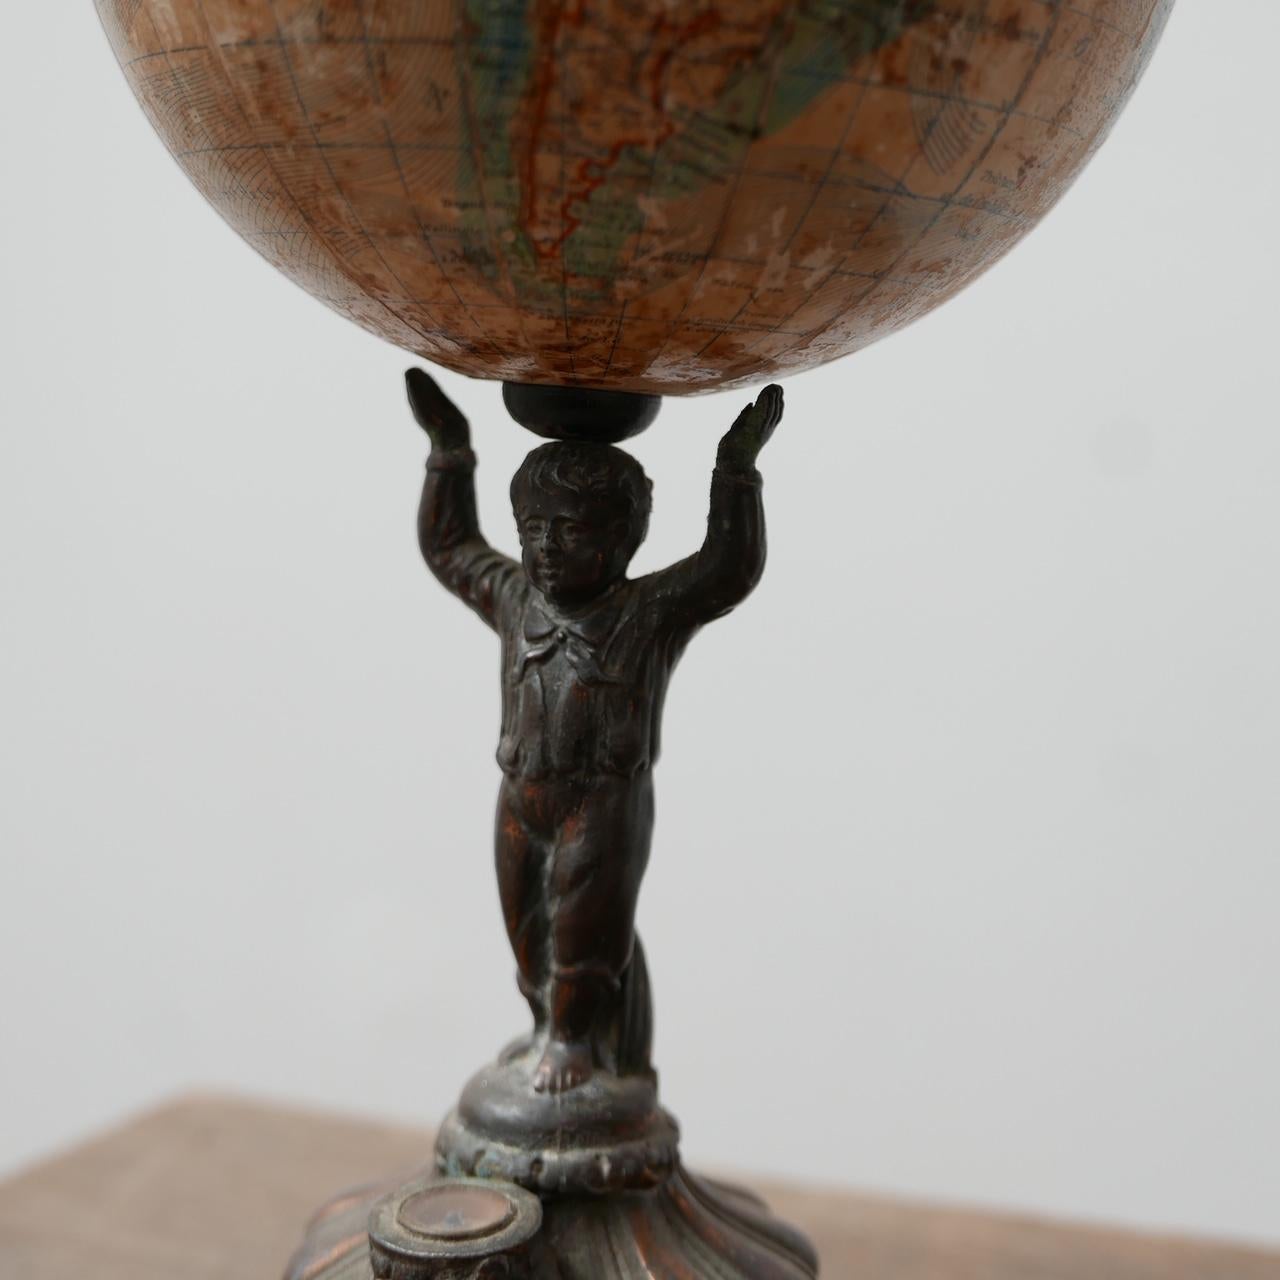 Antique Papier-Mache German World Globe by Ludwig Julius Heymann 1